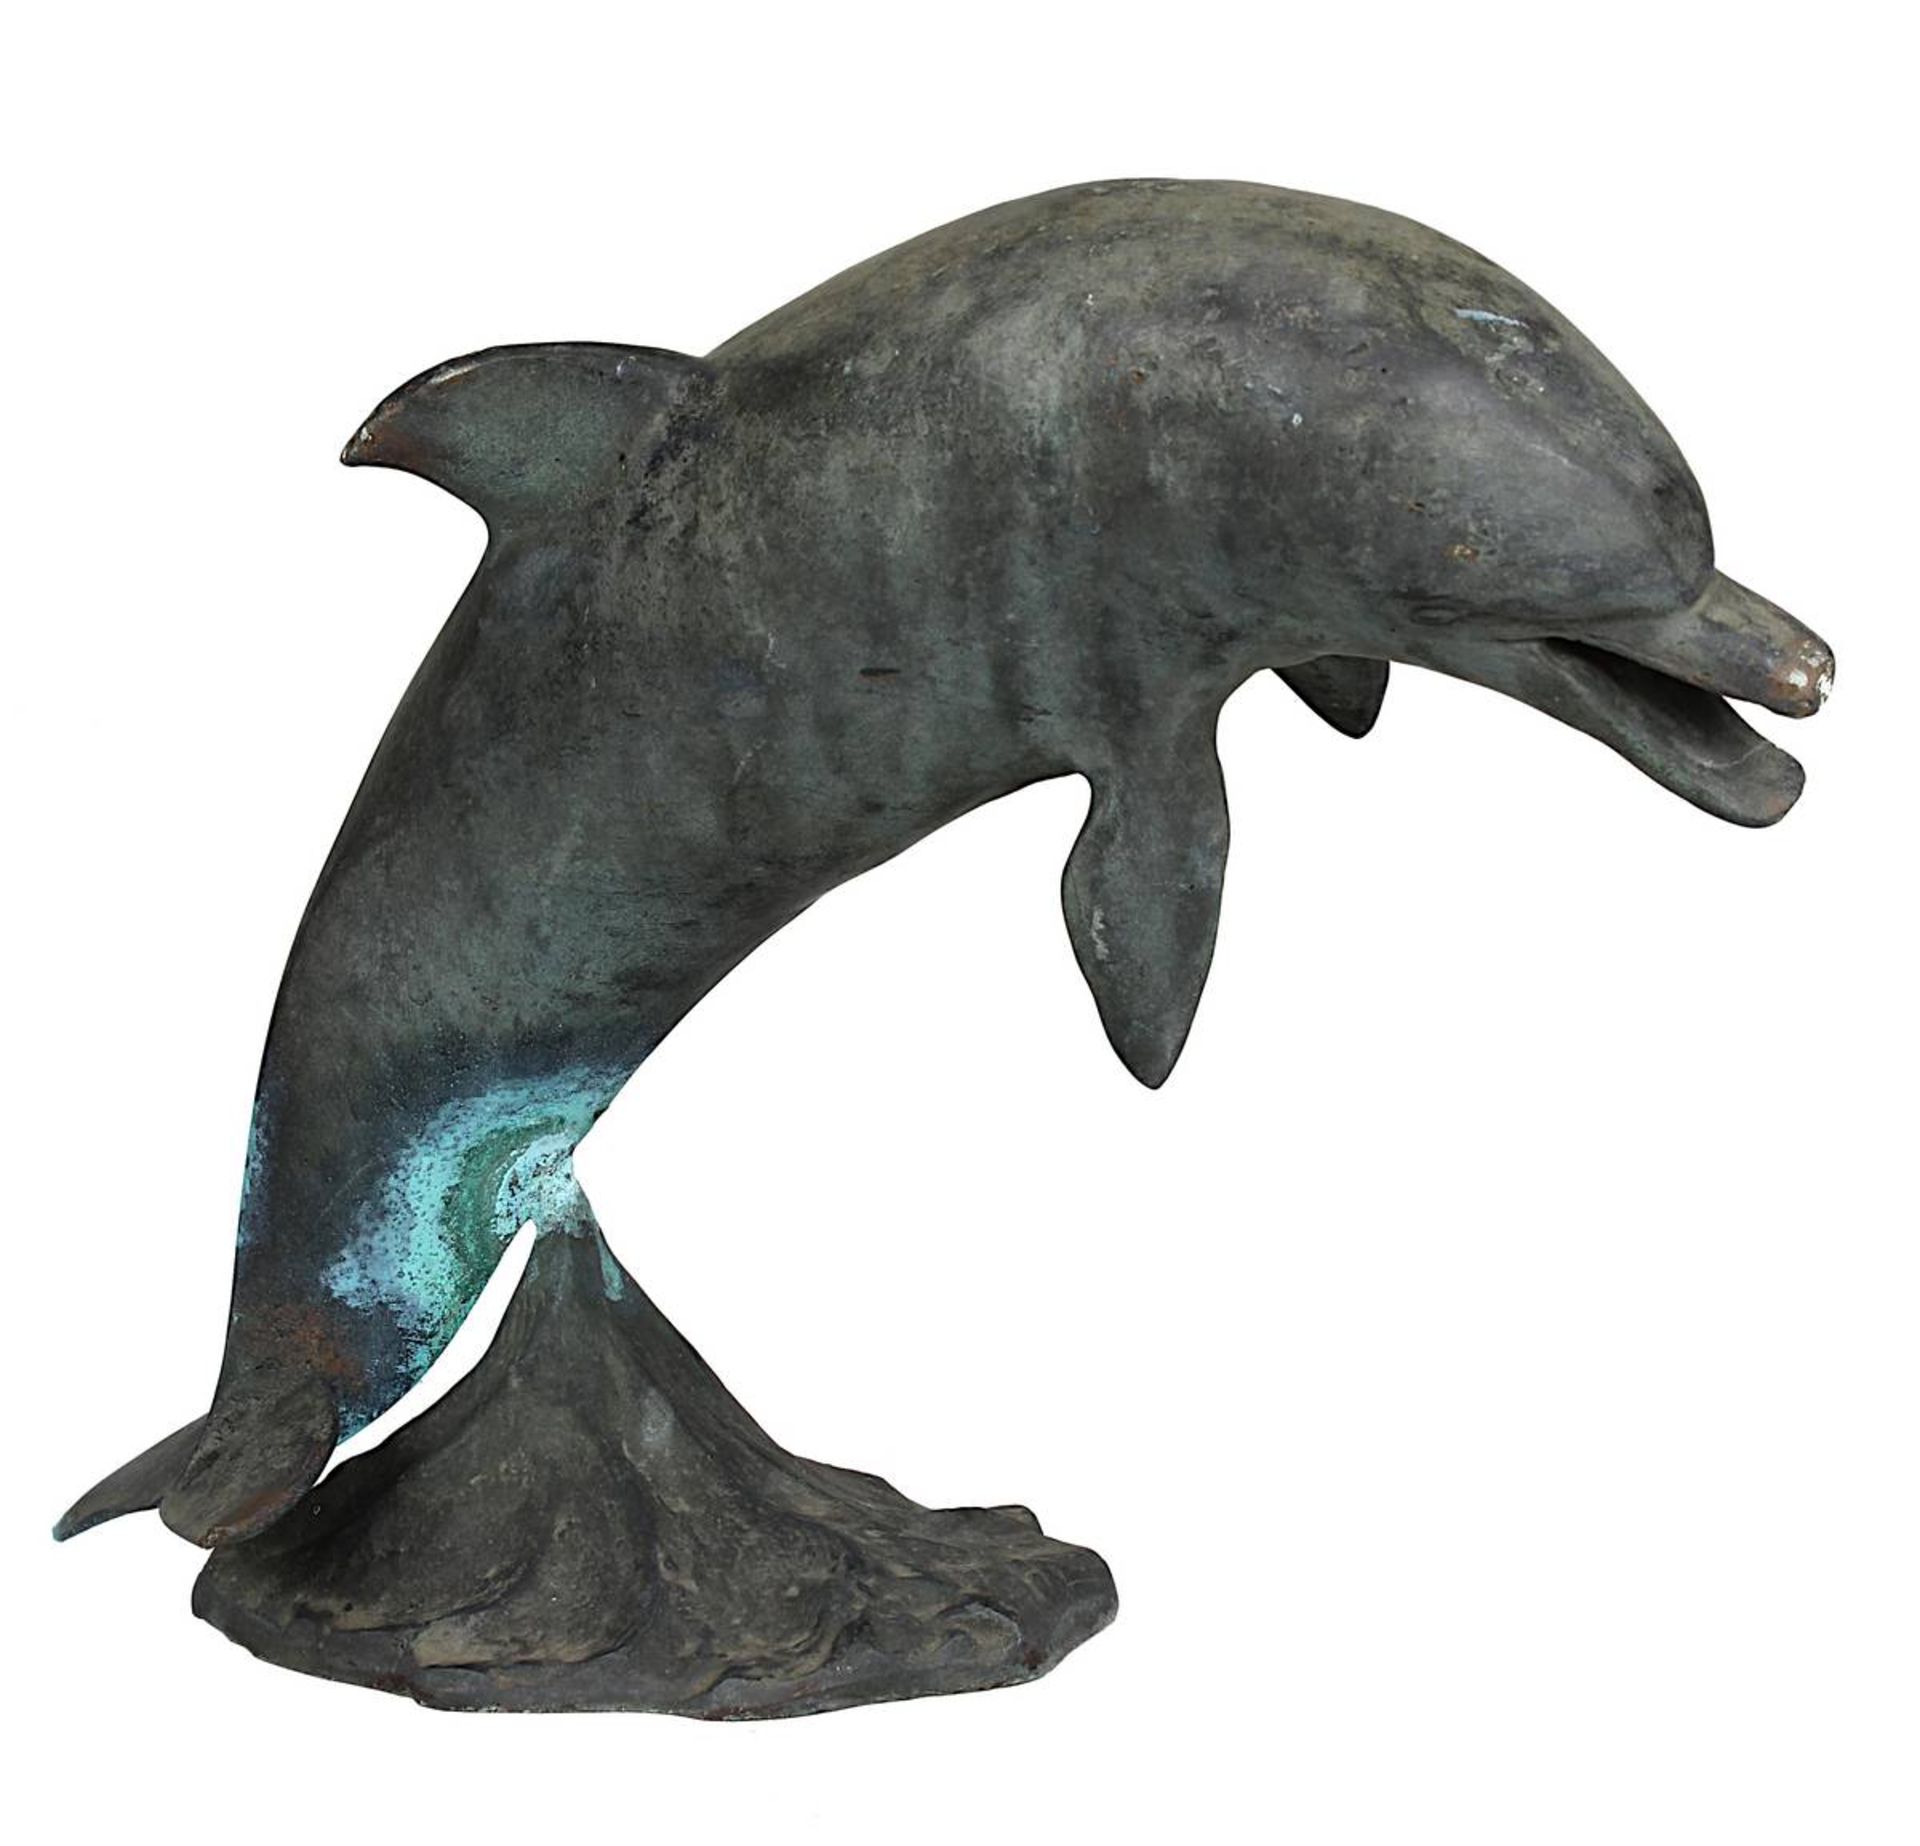 Stiller, Rose Maria (1920 - 1993 Berlin), Springender Delfin, Bronzefigur, nach Angaben der